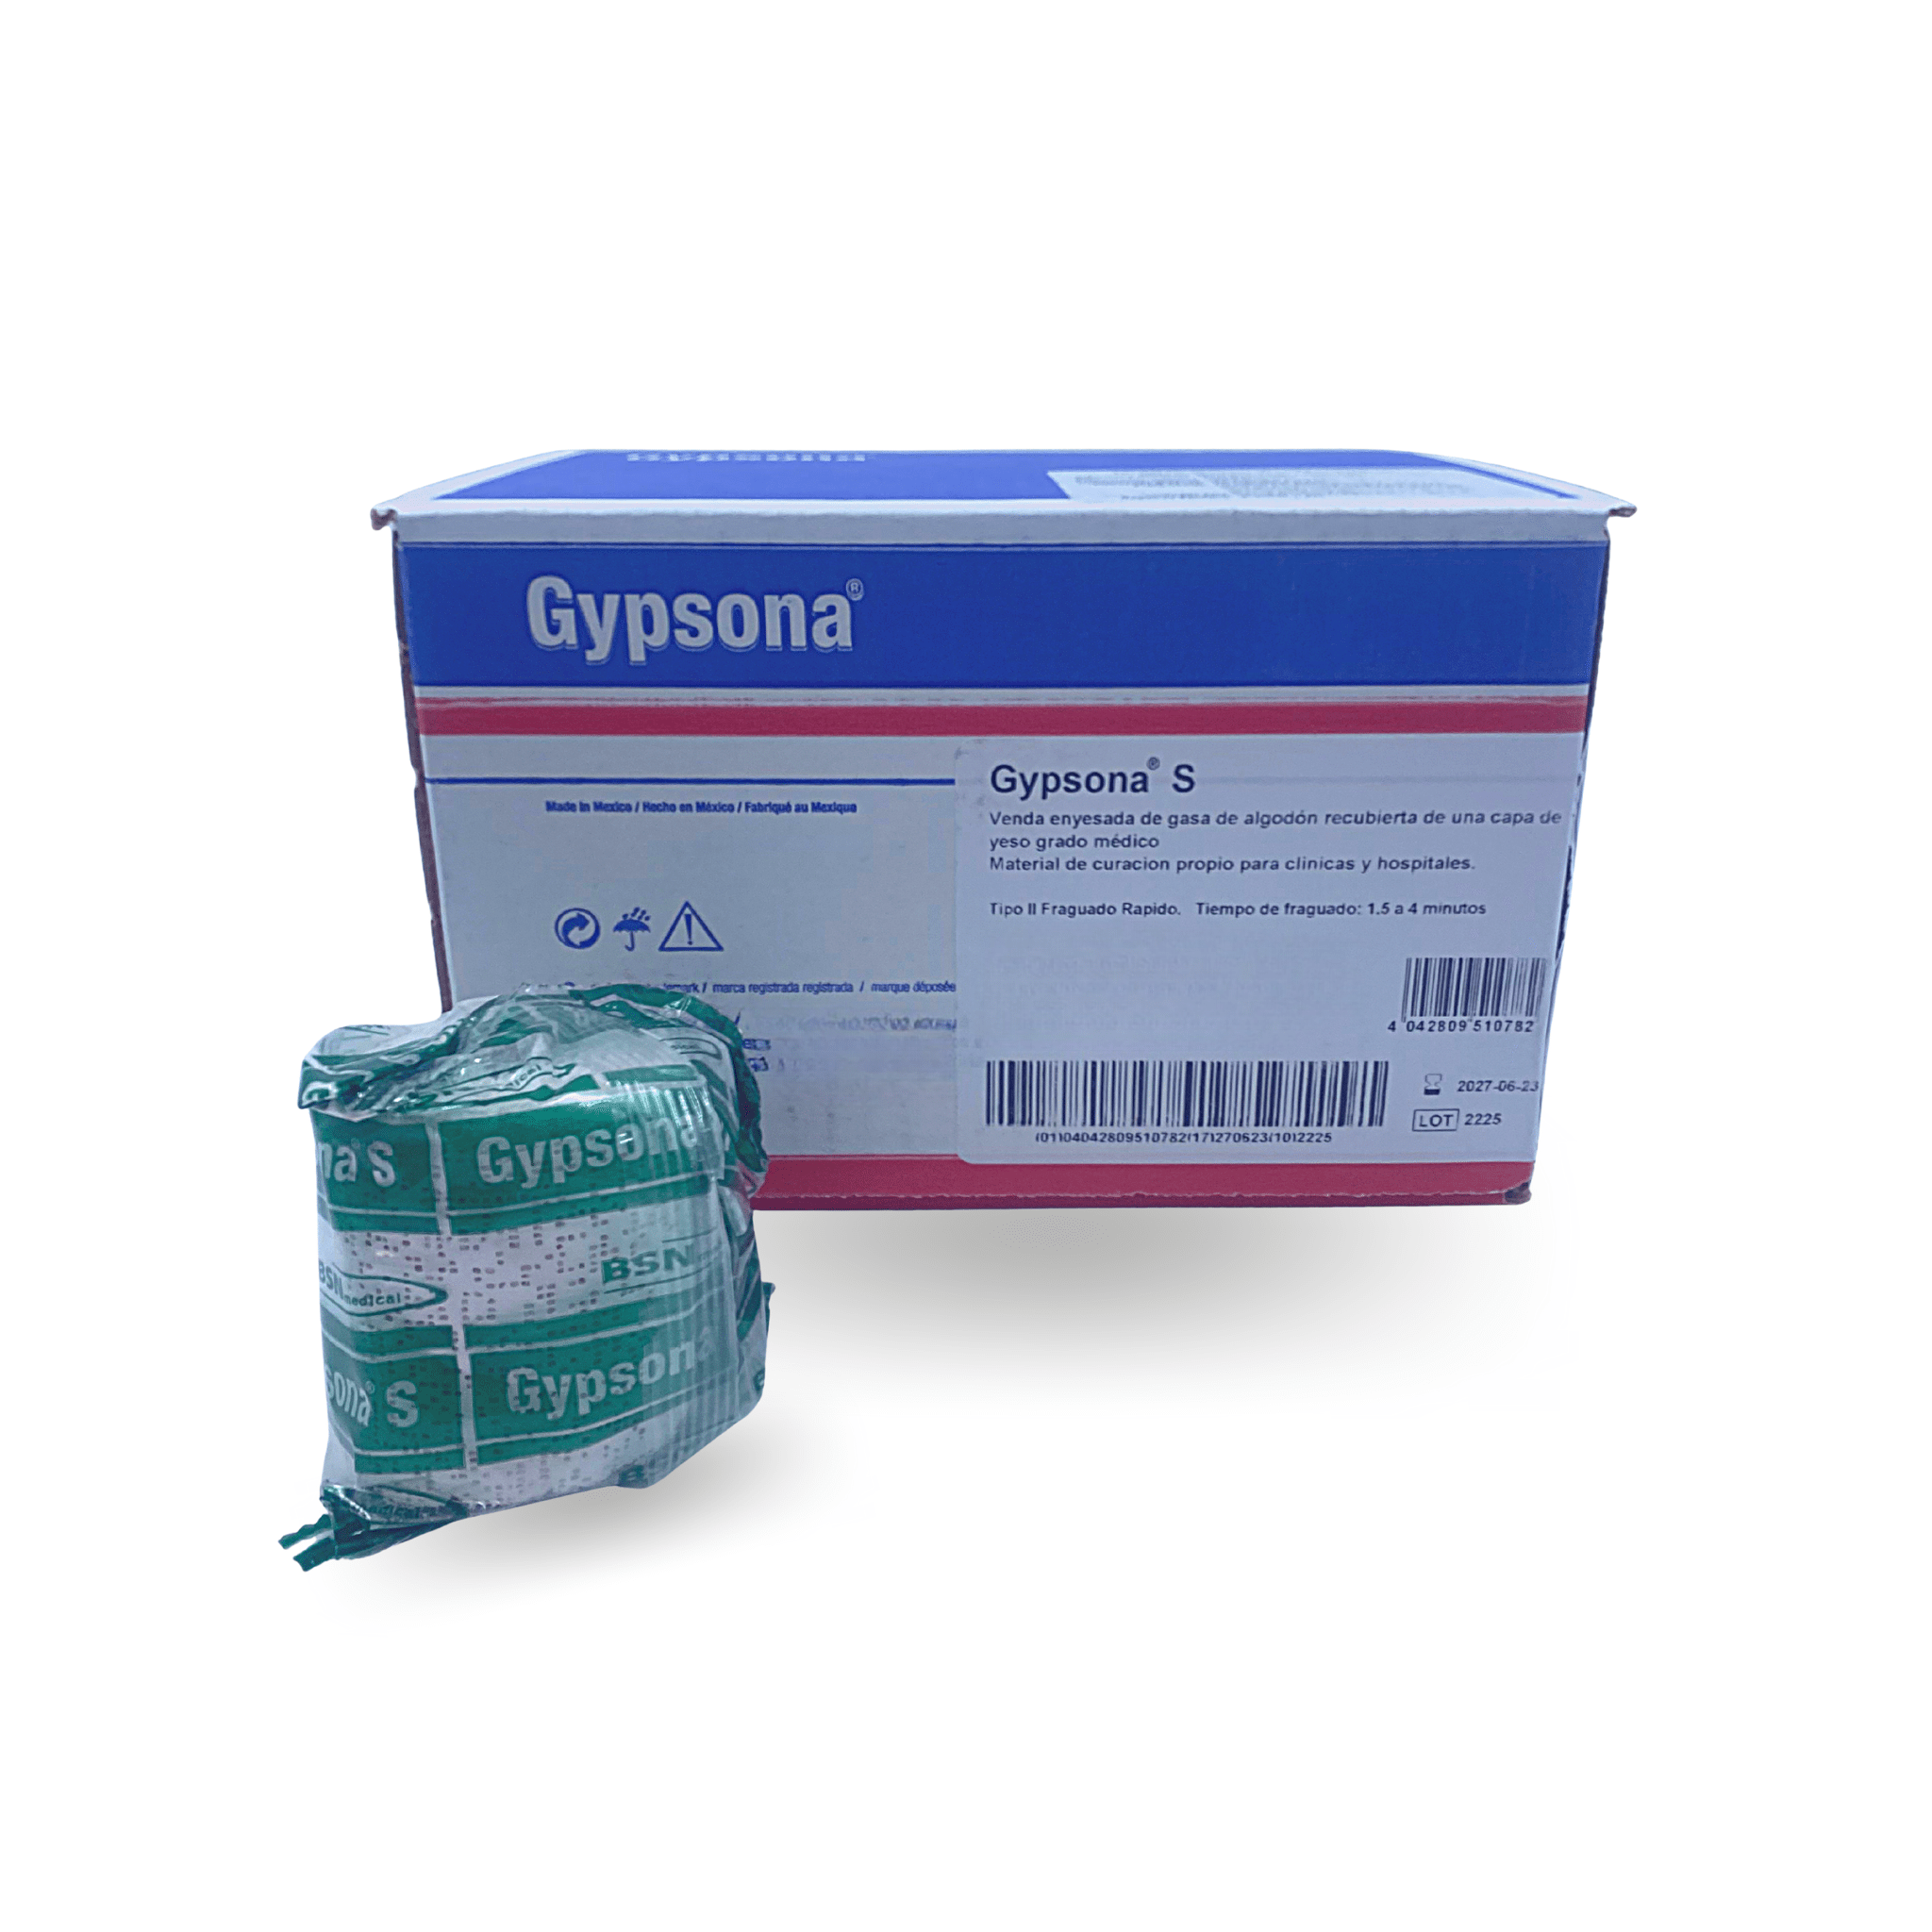 Farmaconal - Gypsona® es una venda de yeso de alta calidad